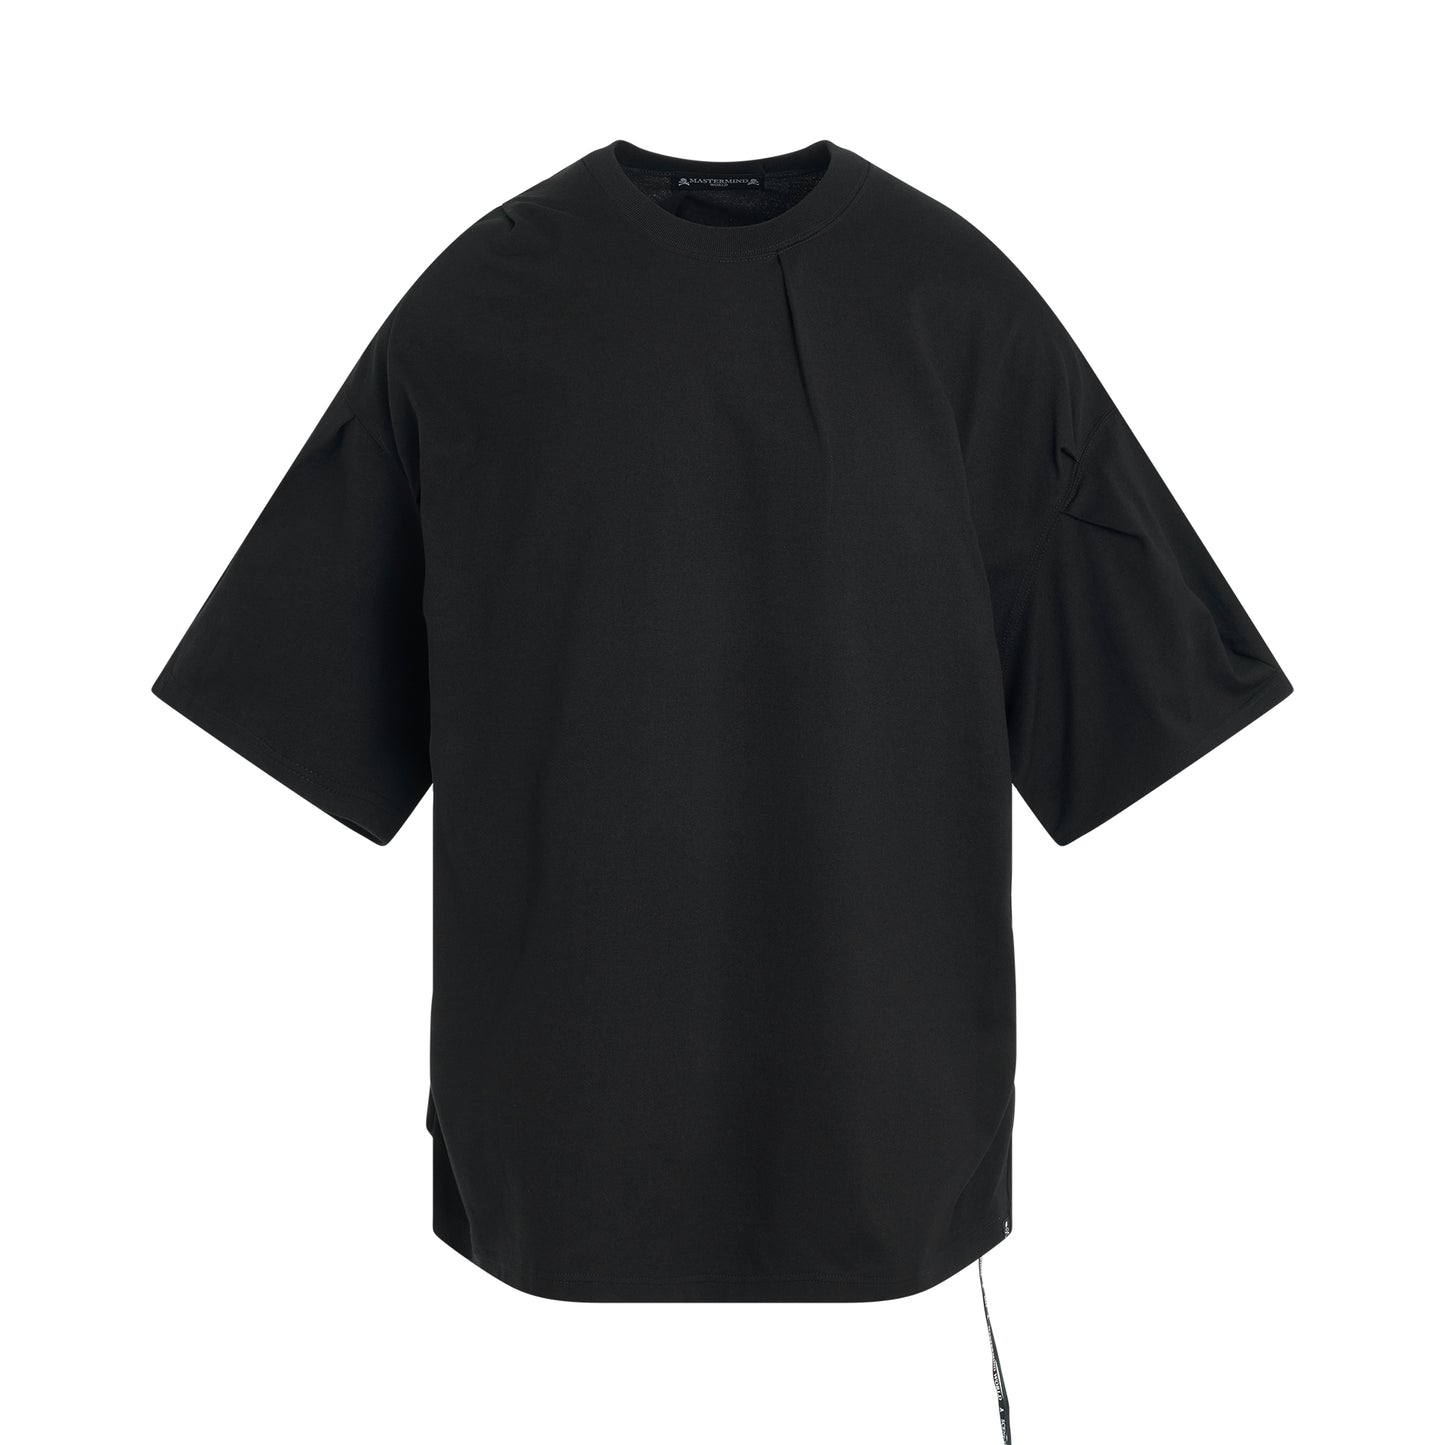 Tuck Oversized T-Shirt in Black